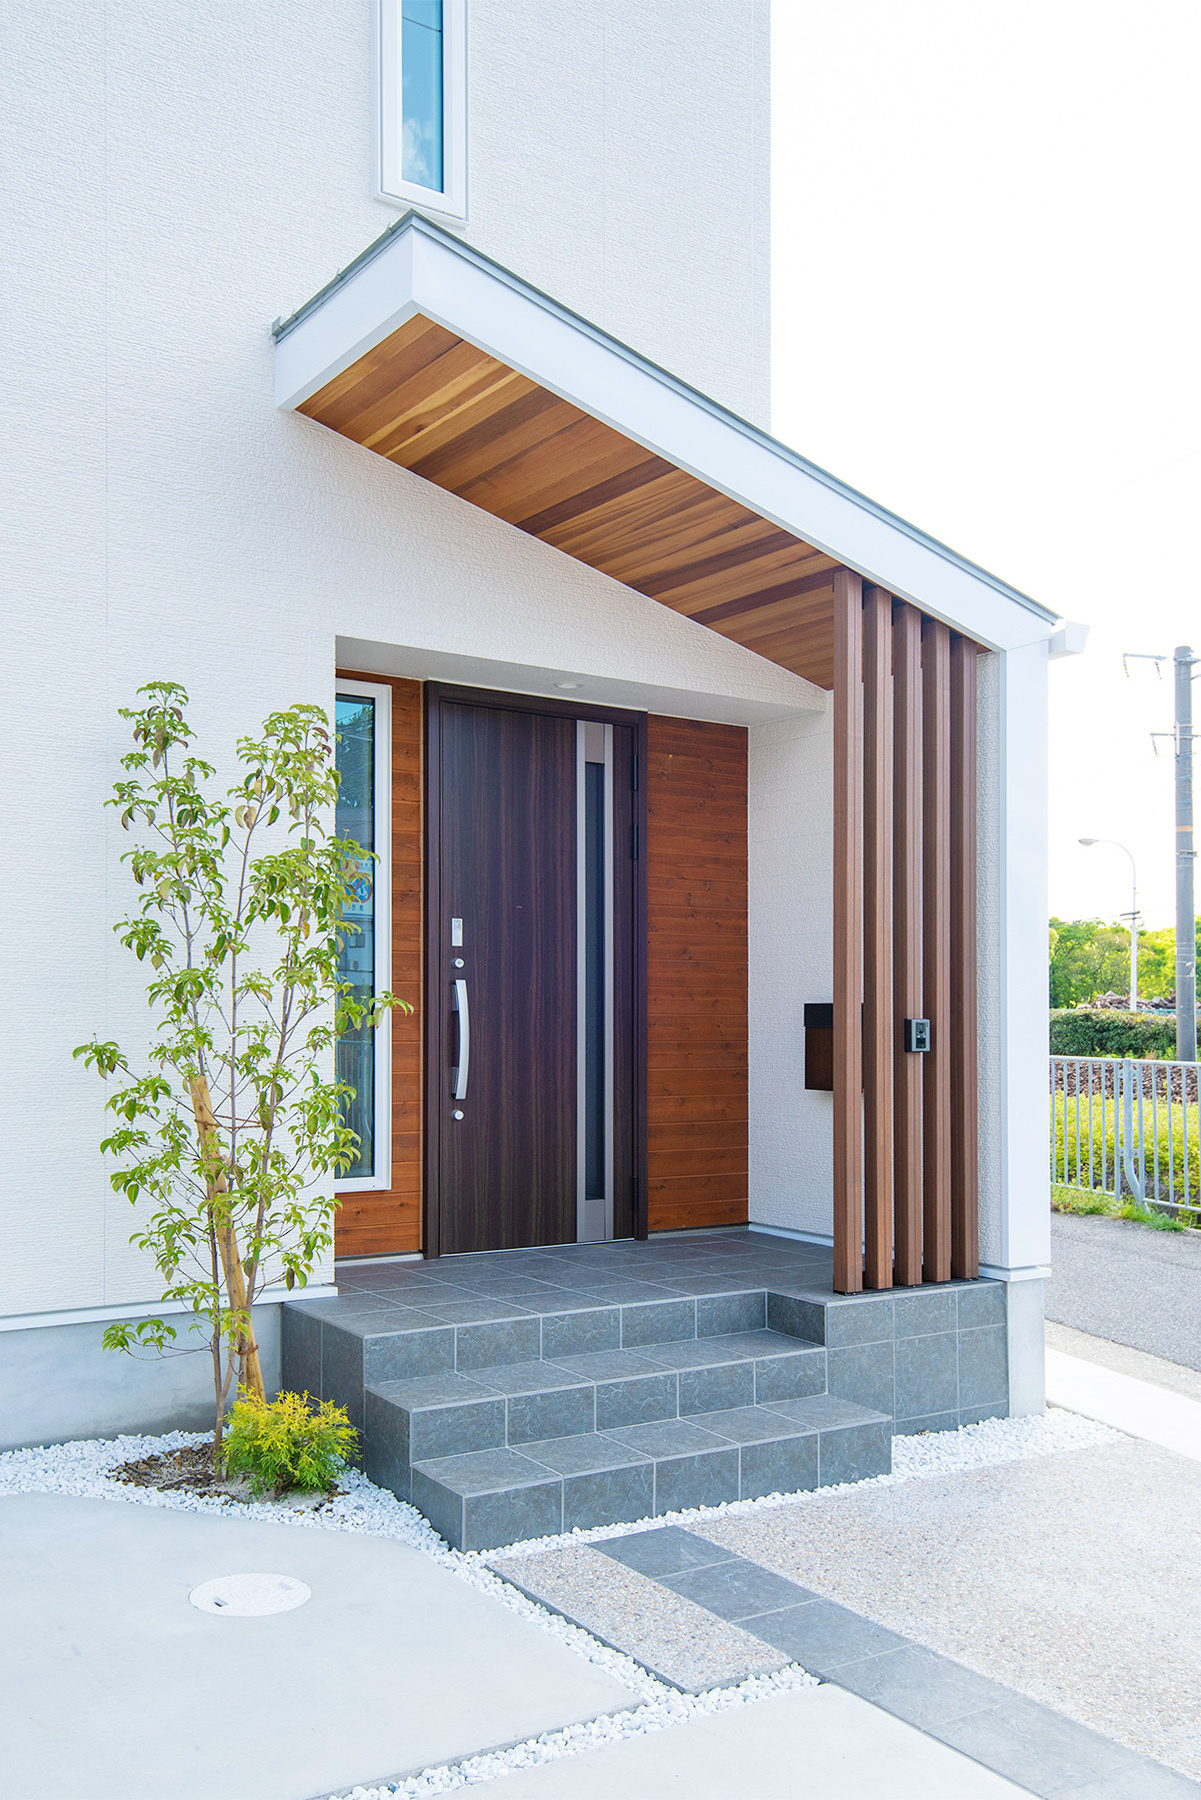 玄関アプローチ、ポーチは随所に天然木材を使用している。勾配天井の多いガレージハウスや平屋間取りでも人気がある。